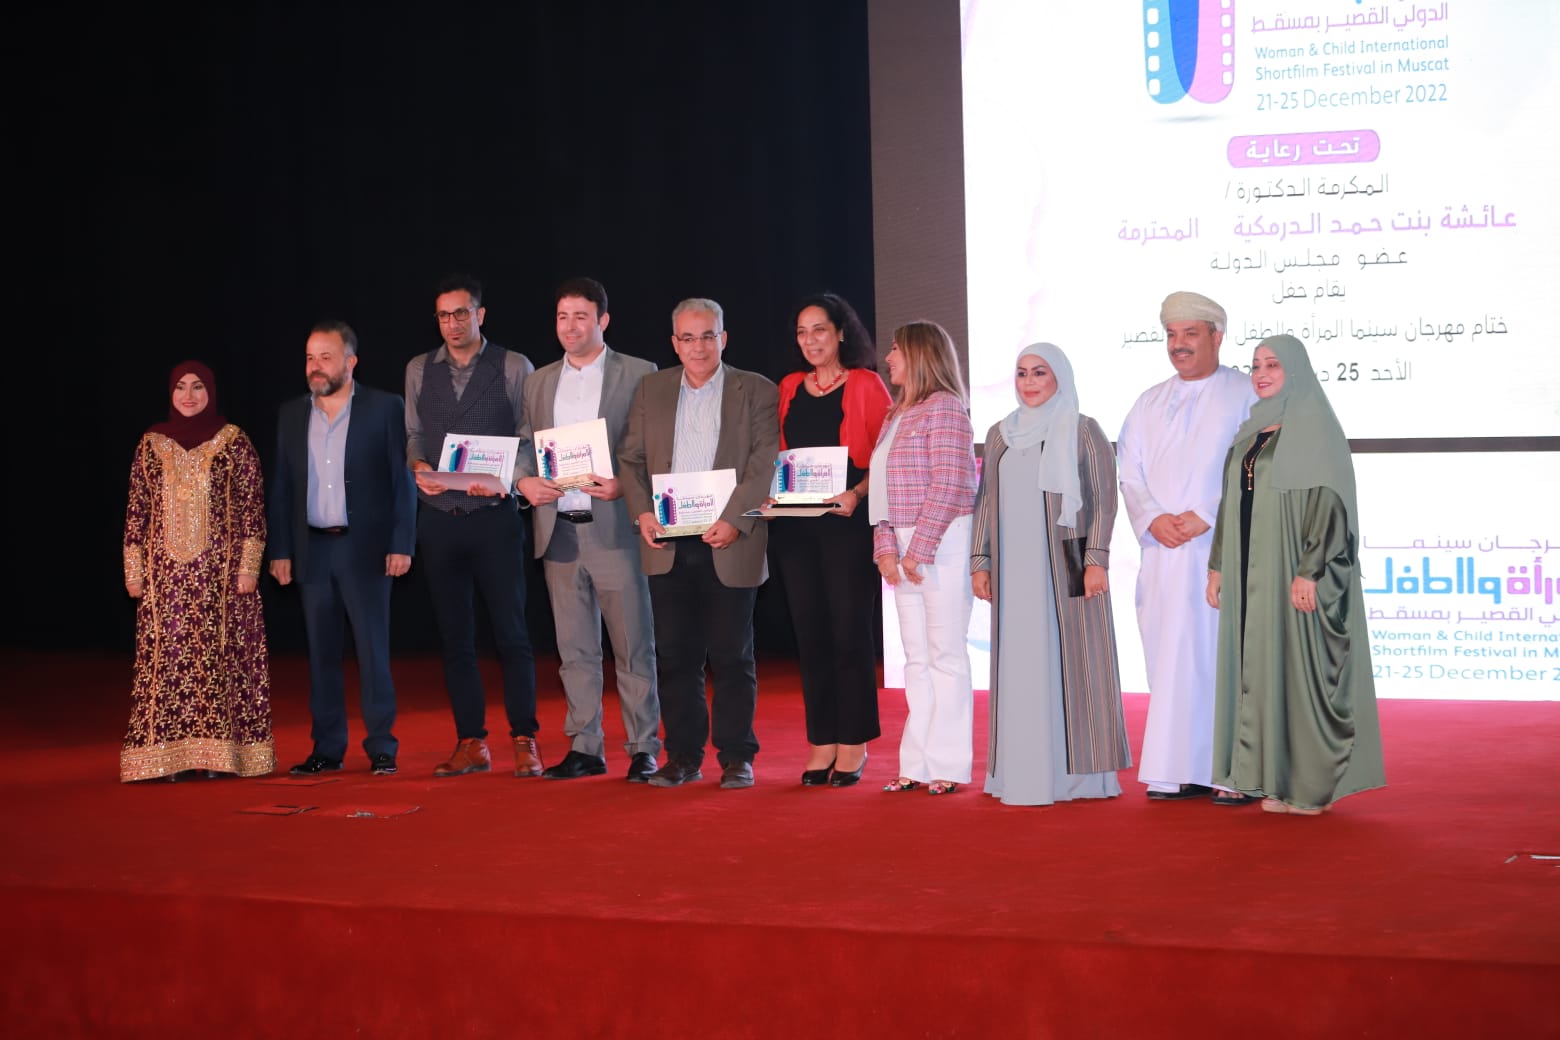 فاز الفيلم المصري (دير وارد) بجائزة أفضل فيلم روائي في المهرجان الدولي لفيلم المرأة والطفل بمسقط (2).